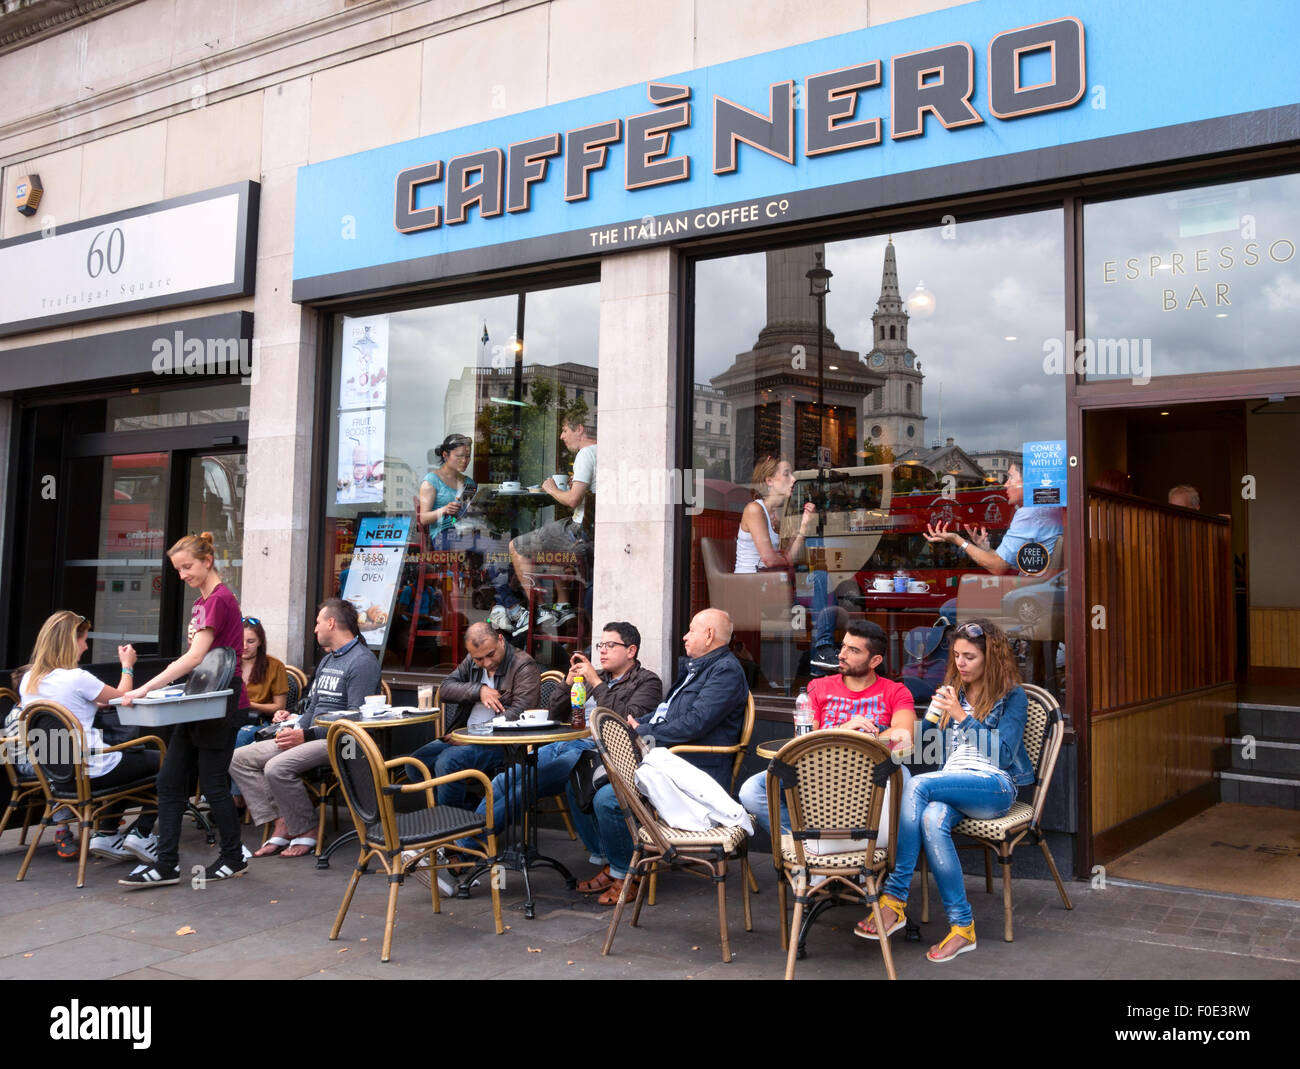 Café-Bar außerhalb von Großbritannien; Gäste sitzen vor der Café-Bar Caffe Nero, Trafalgar Square, London UK Stockfoto